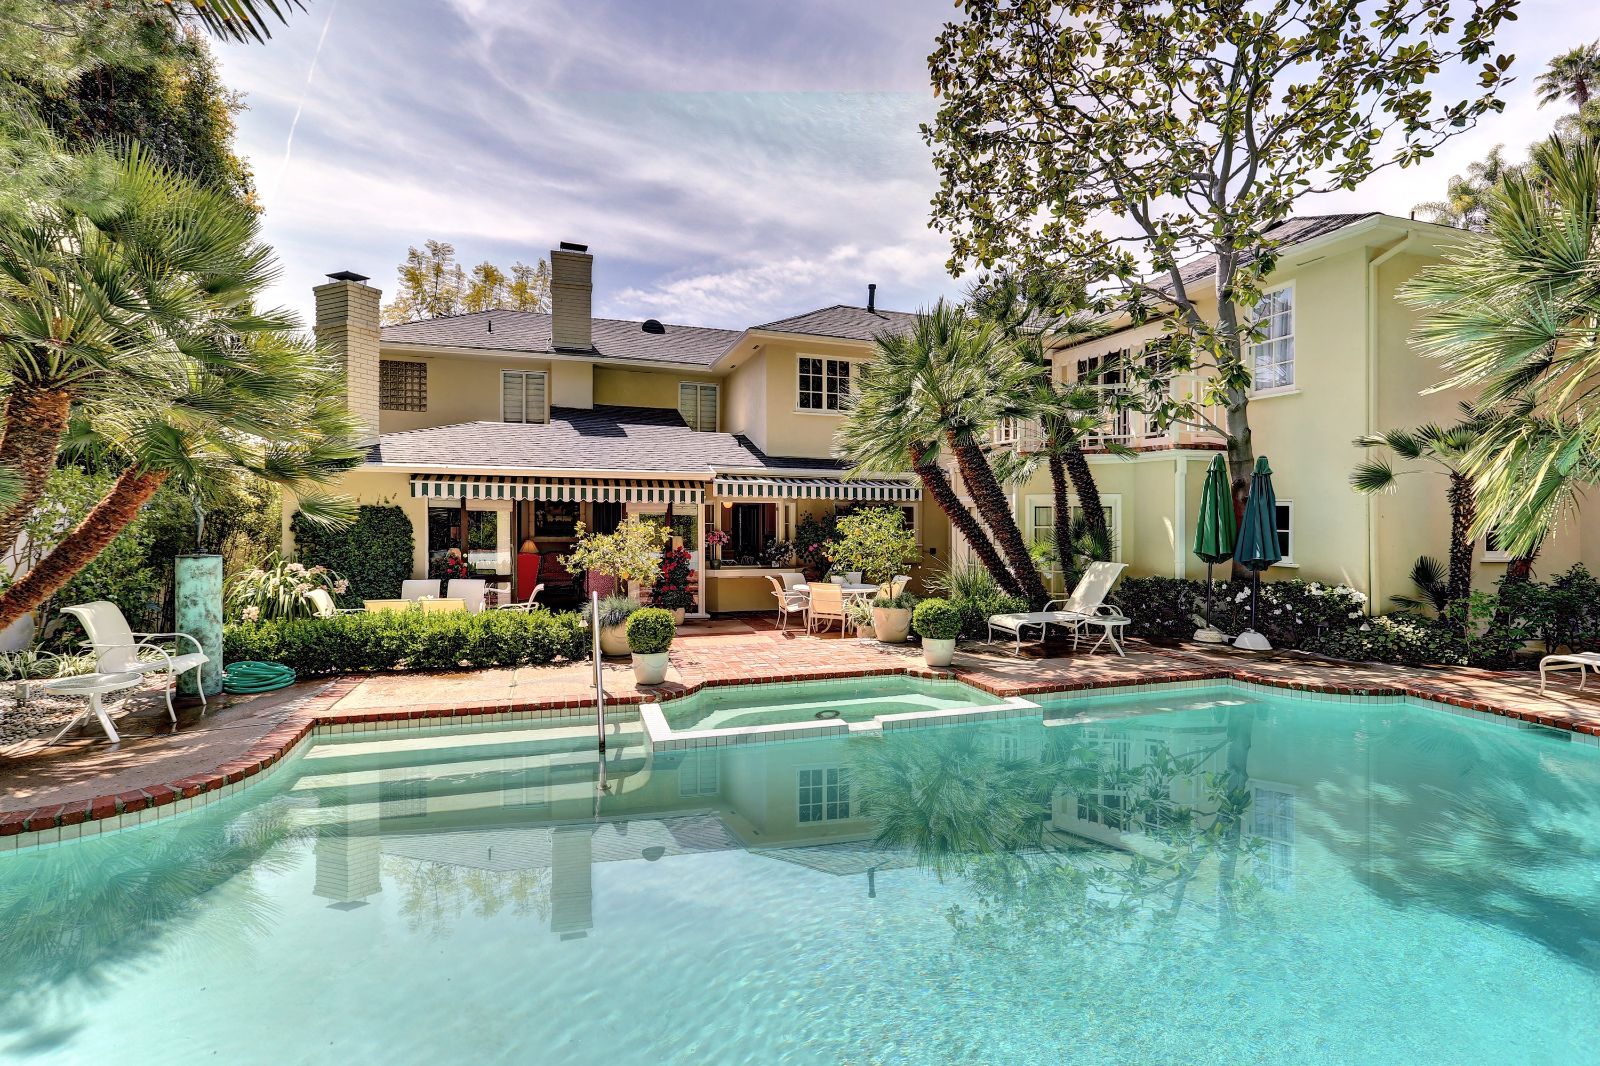 Pool terrace at Flicker Way Estate villa in Los Angeles, USA